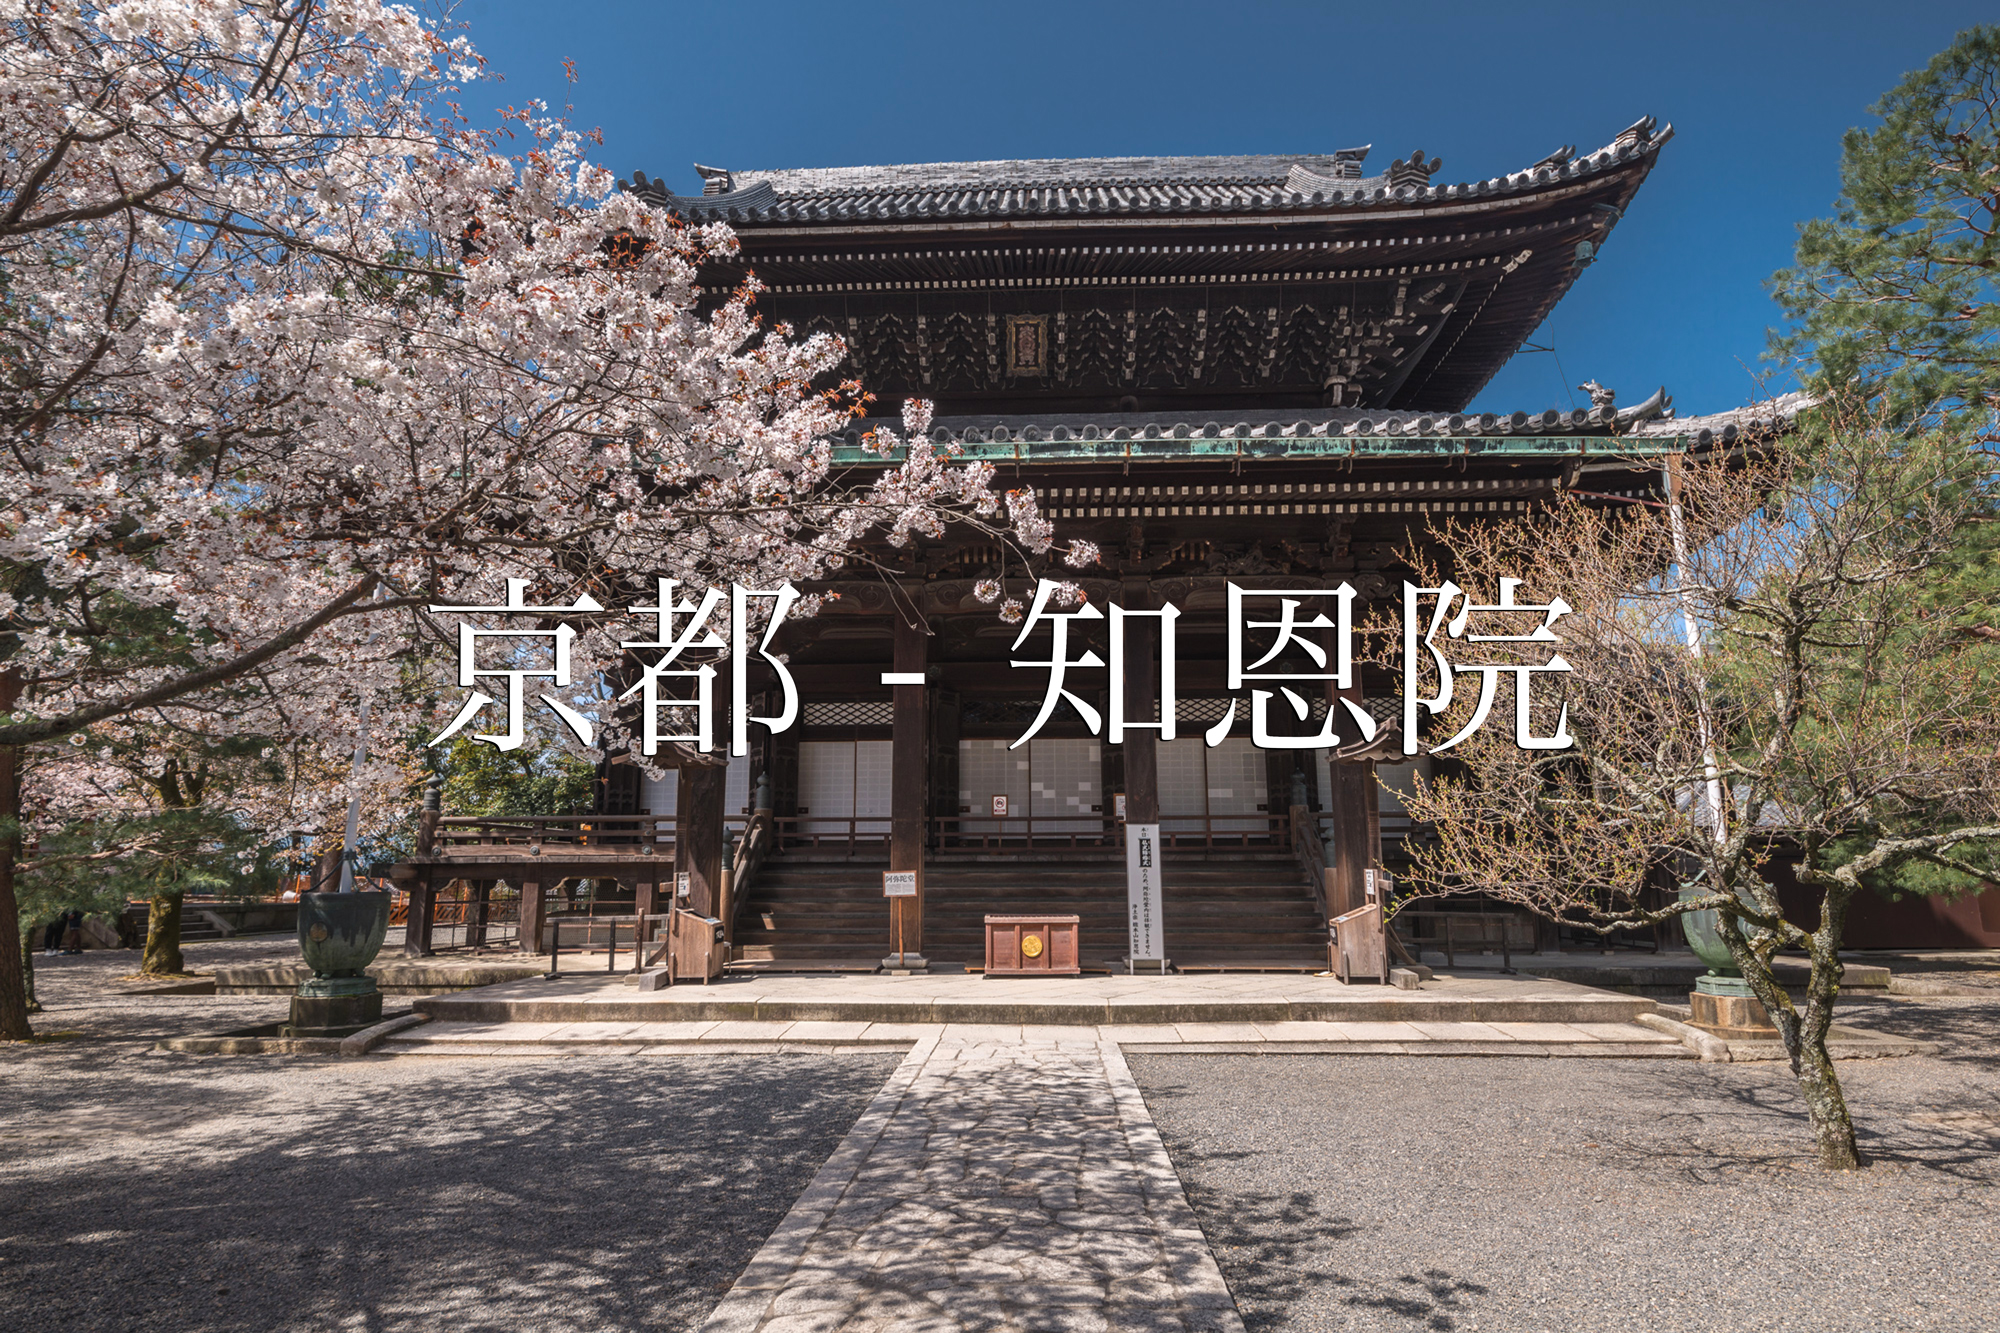 京都 知恩院 京都 春 桜 写真スポット 写真や映像で紹介する関西 近畿の絶景カメラ 観光スポット